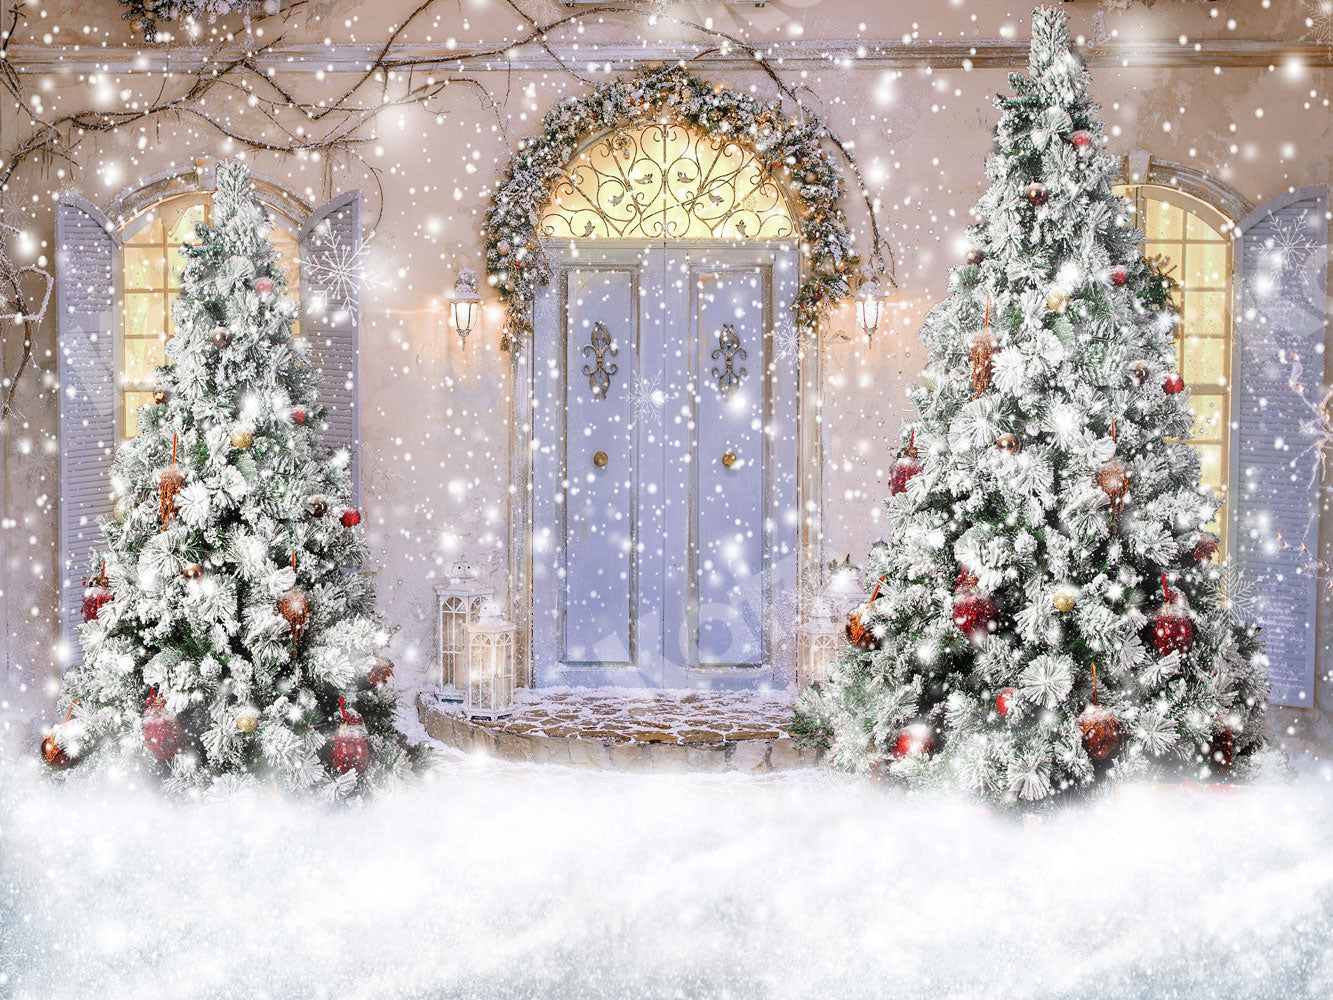 Kate 雪のクリスマスツリーの背景正面玄関